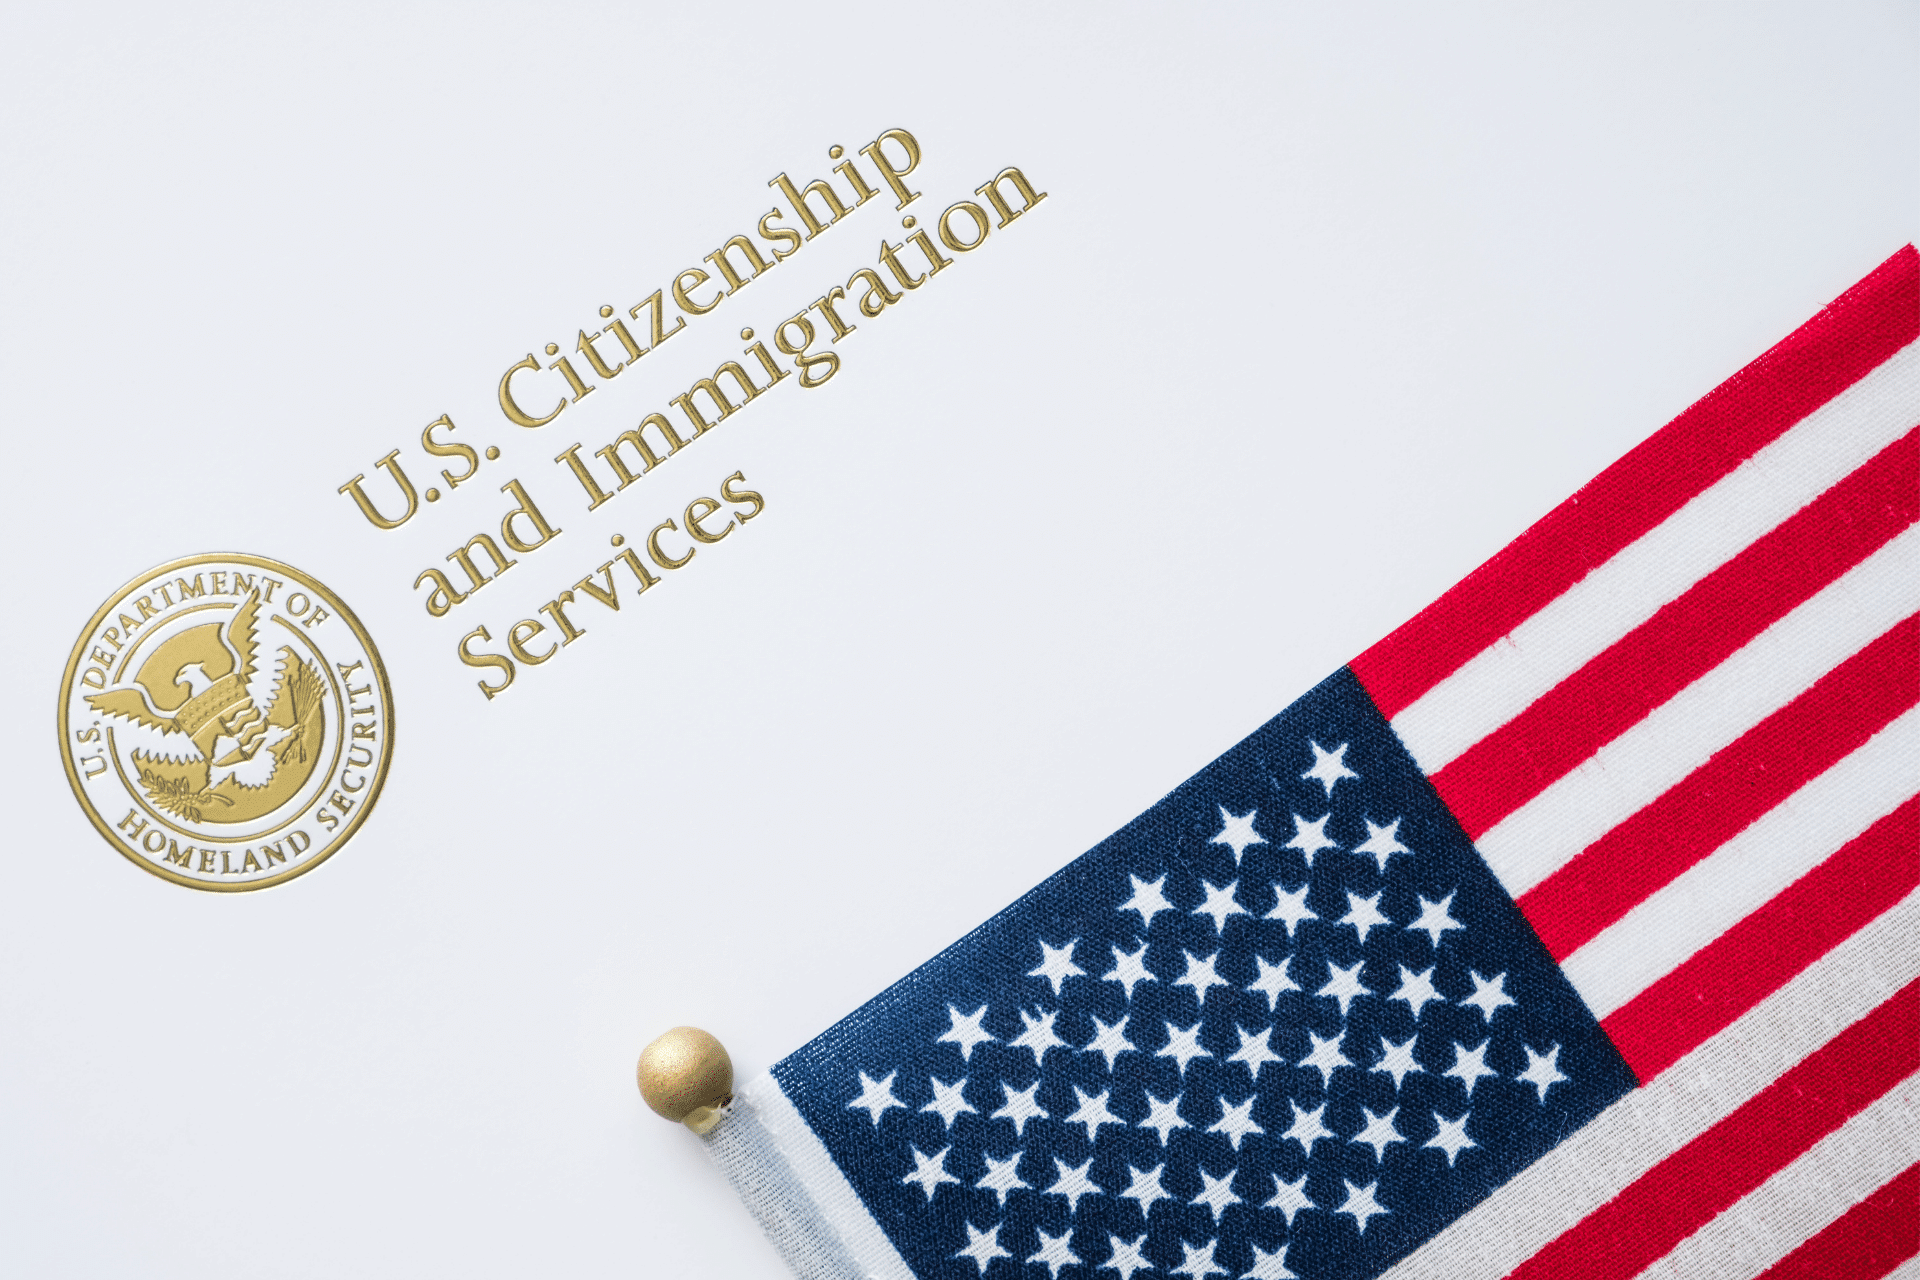 US flag on top of USCIS letterhead